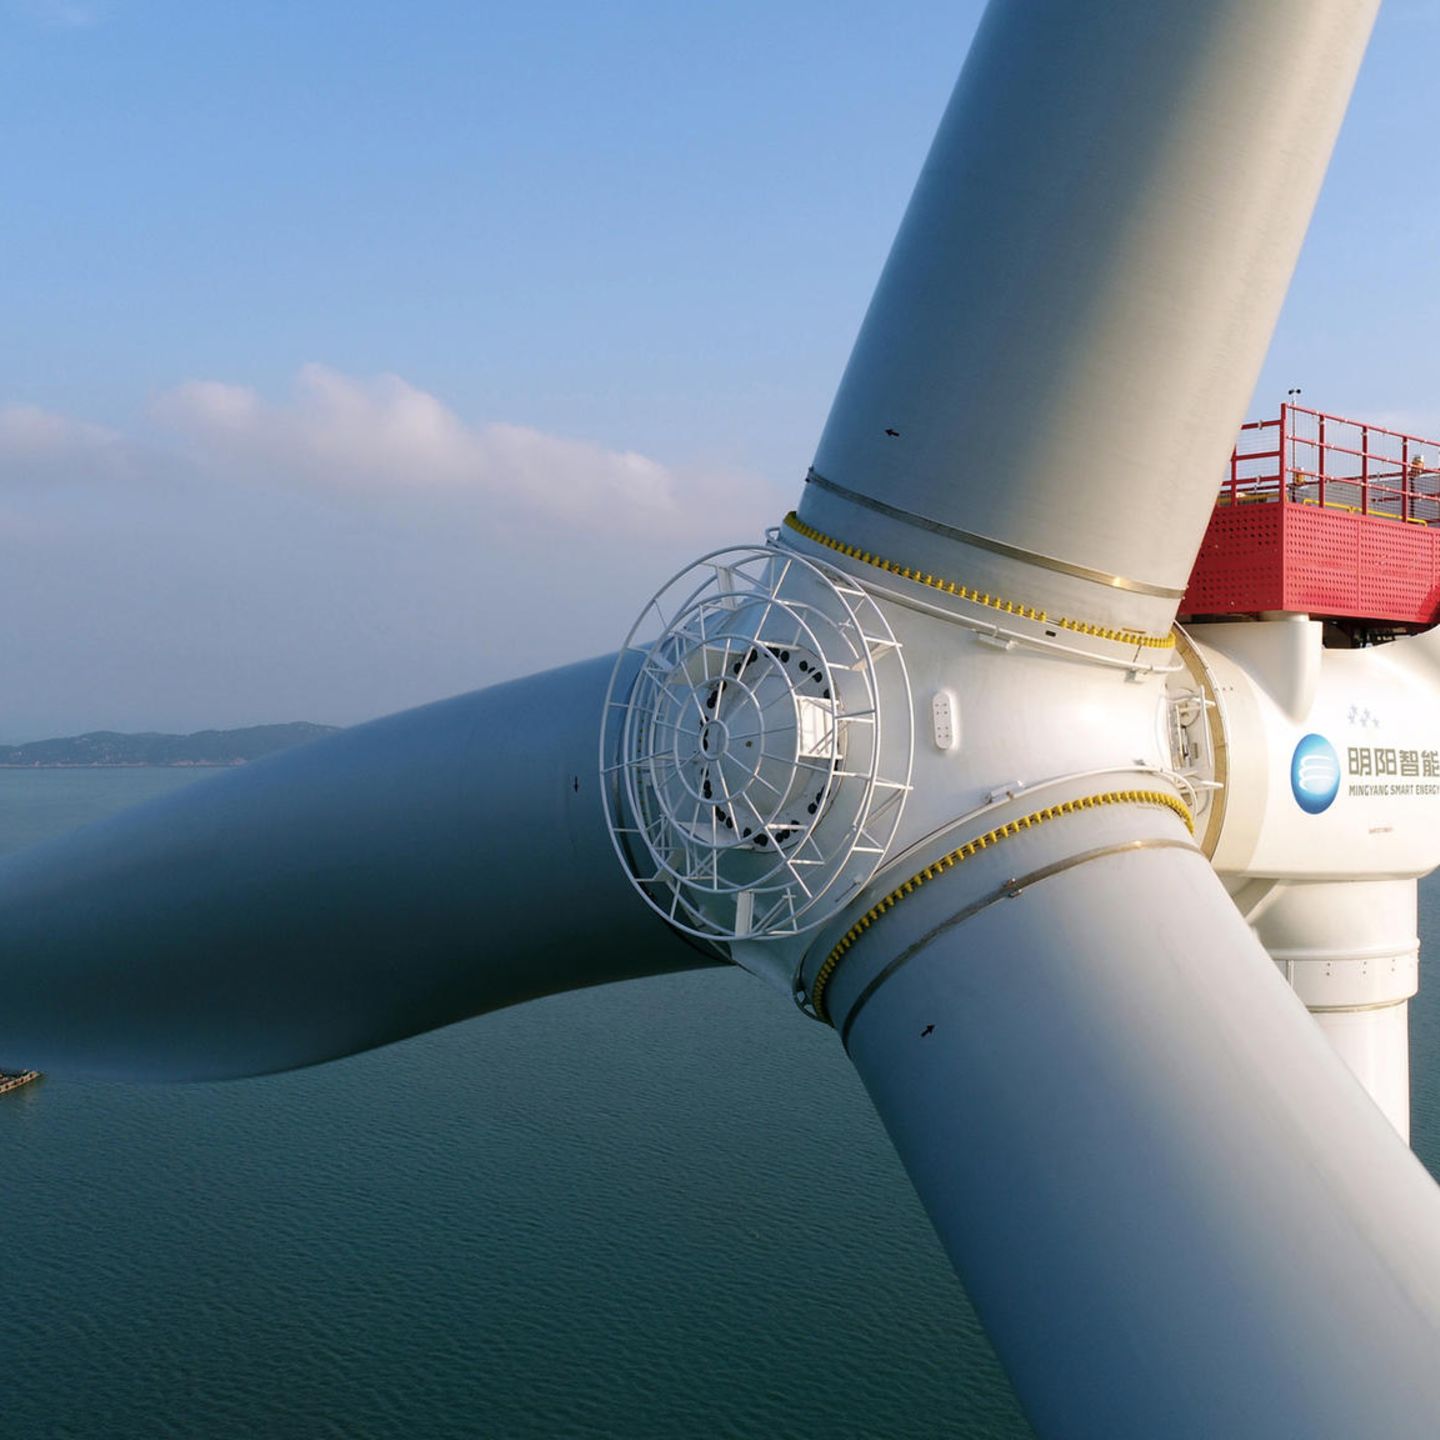 GE entwickelt gigantische Offshore-Windturbine mit 18 MW Leistung